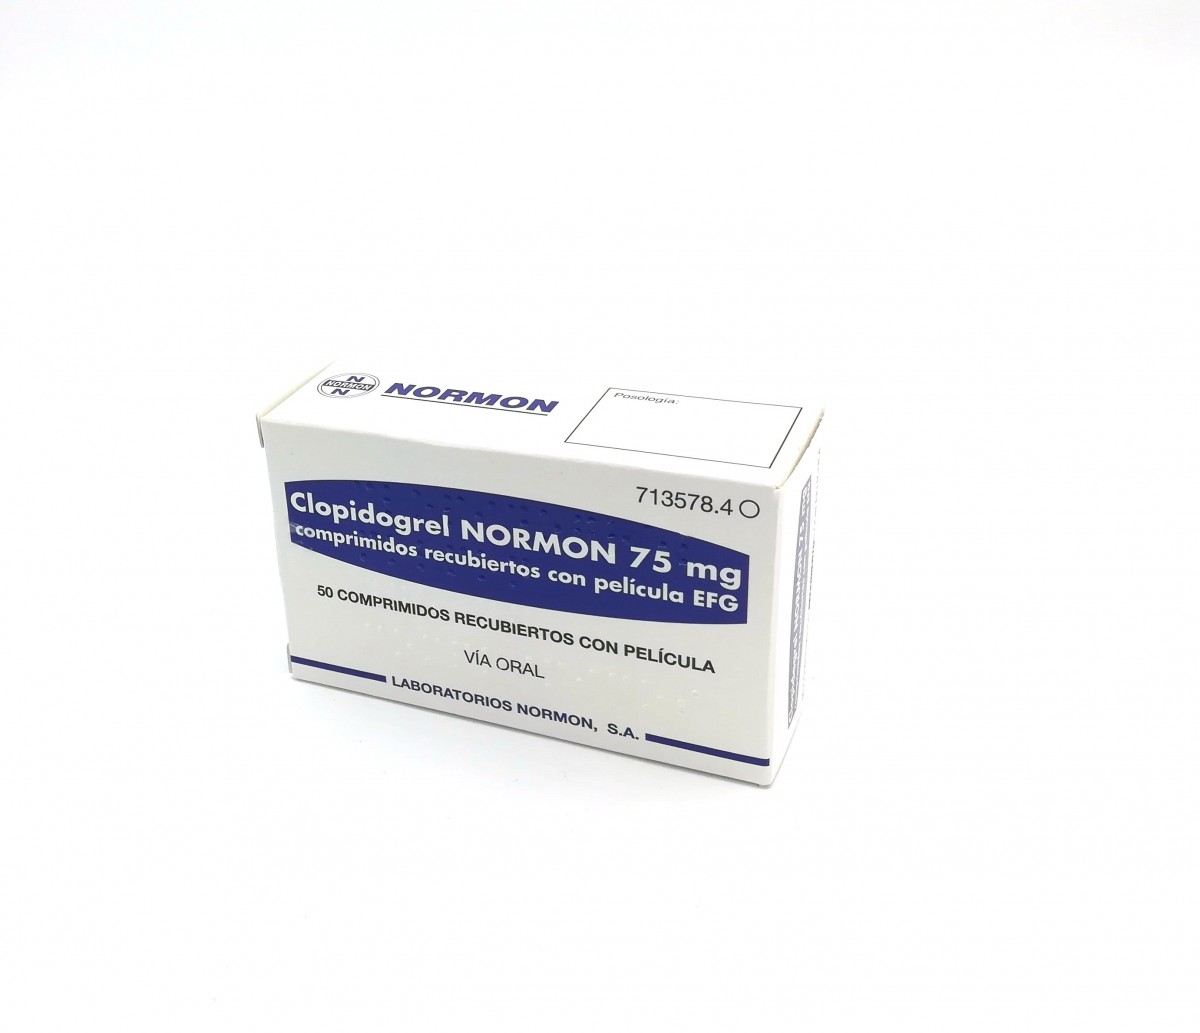 CLOPIDOGREL NORMON 75 mg COMPRIMIDOS RECUBIERTOS CON PELICULA EFG, 50 comprimidos (Blister Al/PVC/Al/PA) fotografía del envase.